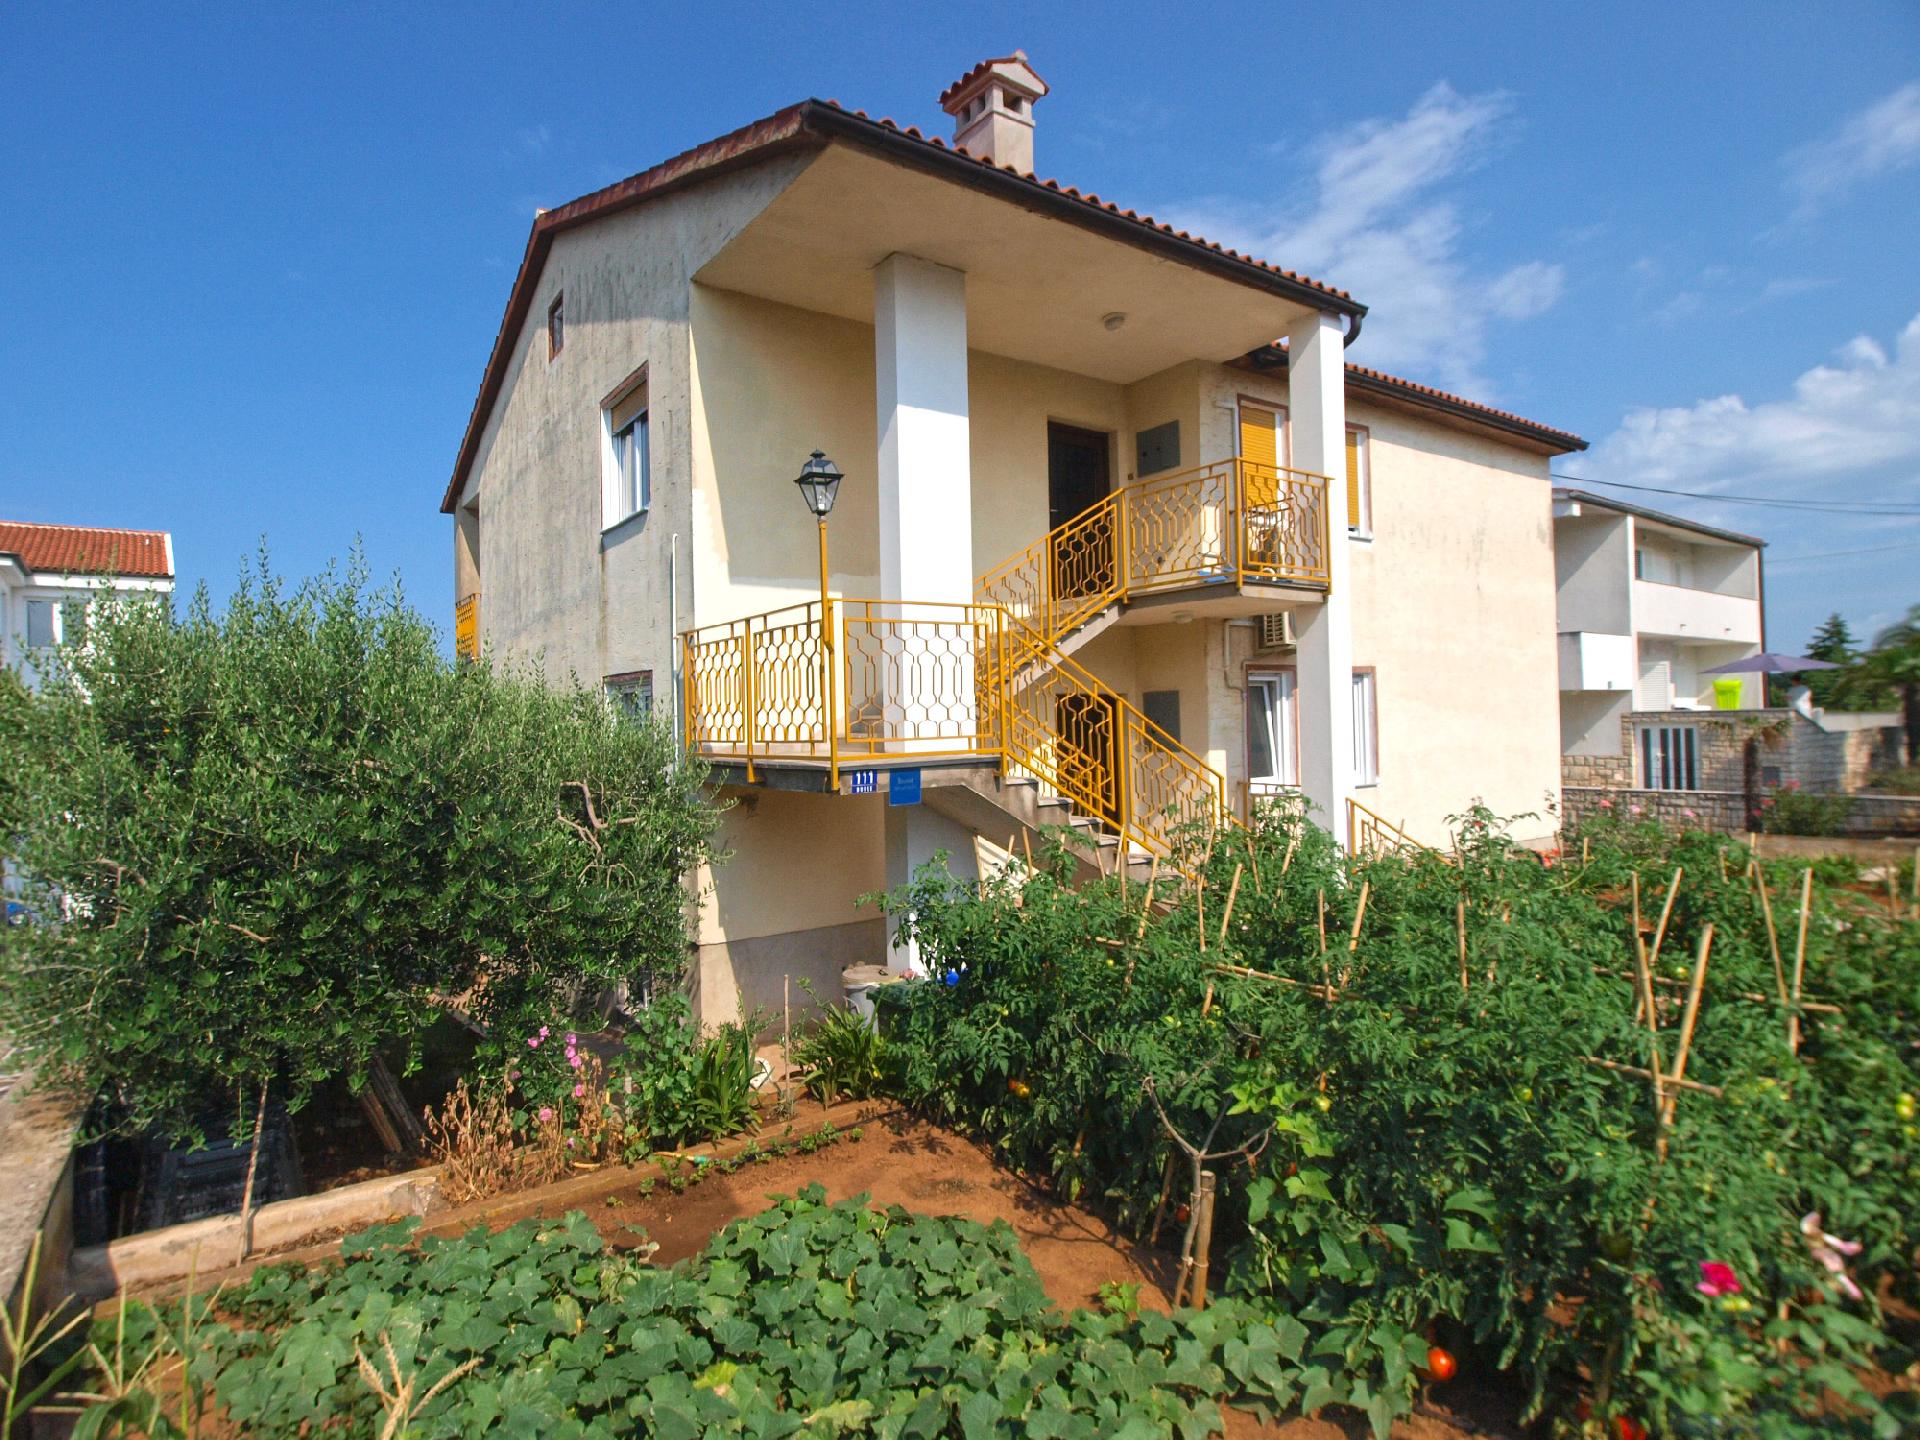 Ferienwohnung für 4 Personen ca. 85 m² i  in Kroatien